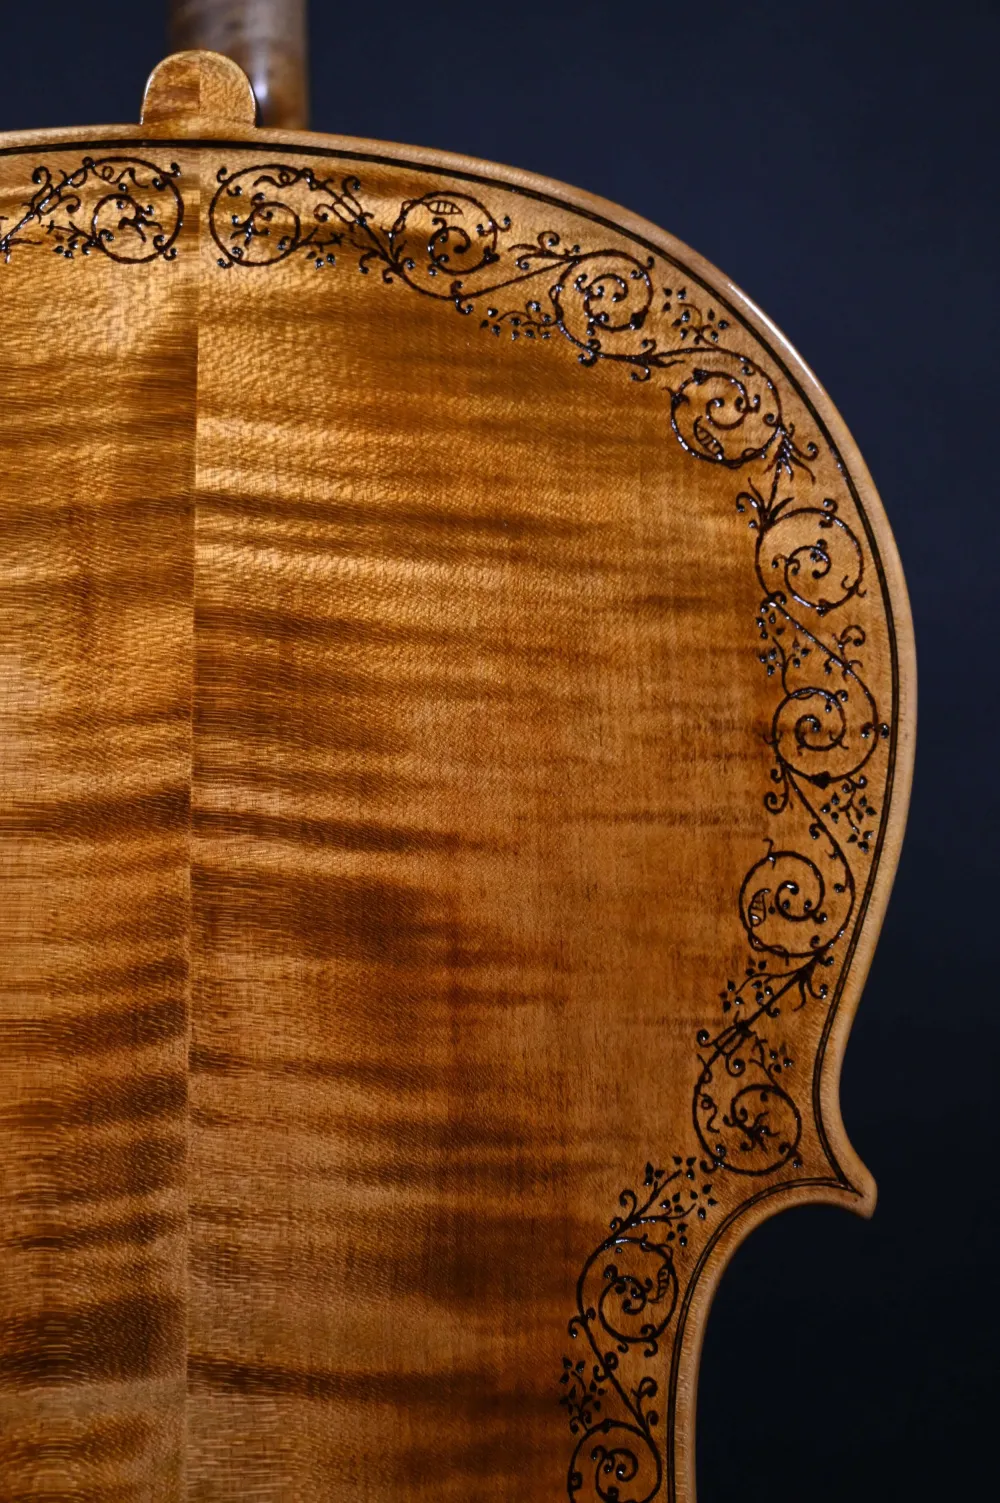 Bodenansicht oben eines Kalas Csaba 4/4 Meister Cello (Violoncello) nach Stradivarius Handarbeit 2022